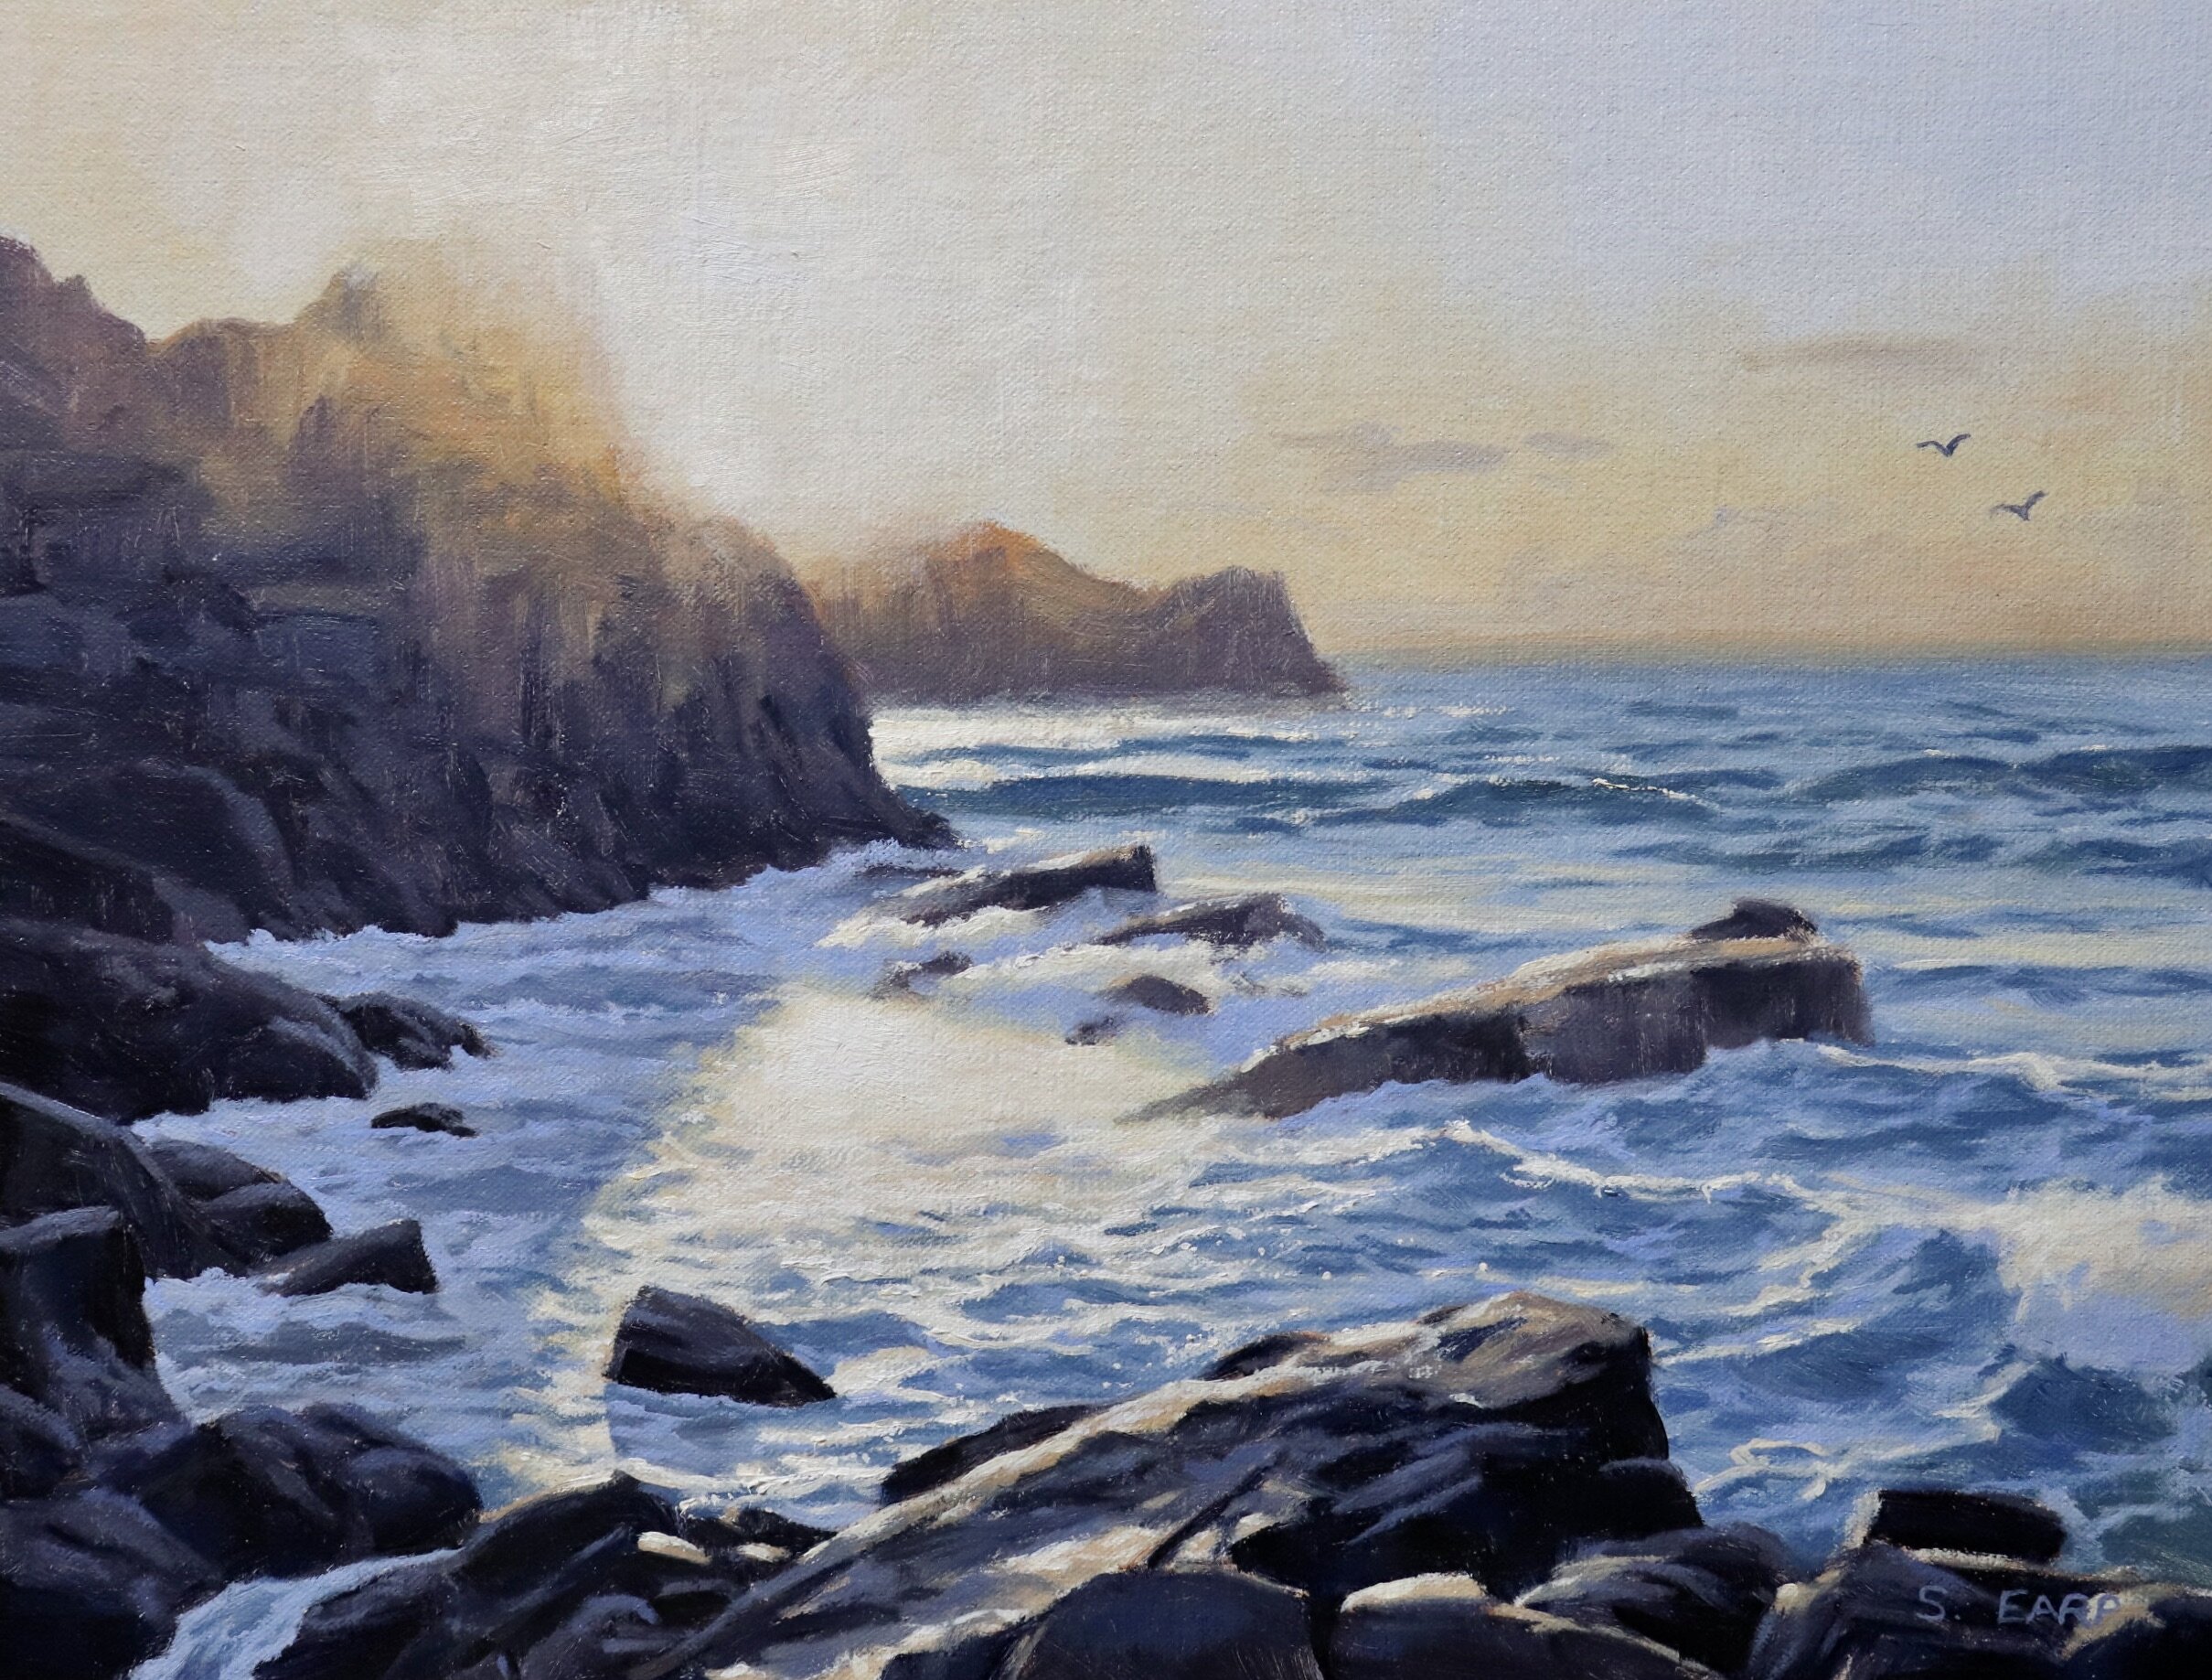 Sunset - Port Soif - Samuel Earp - oil painting.jpeg